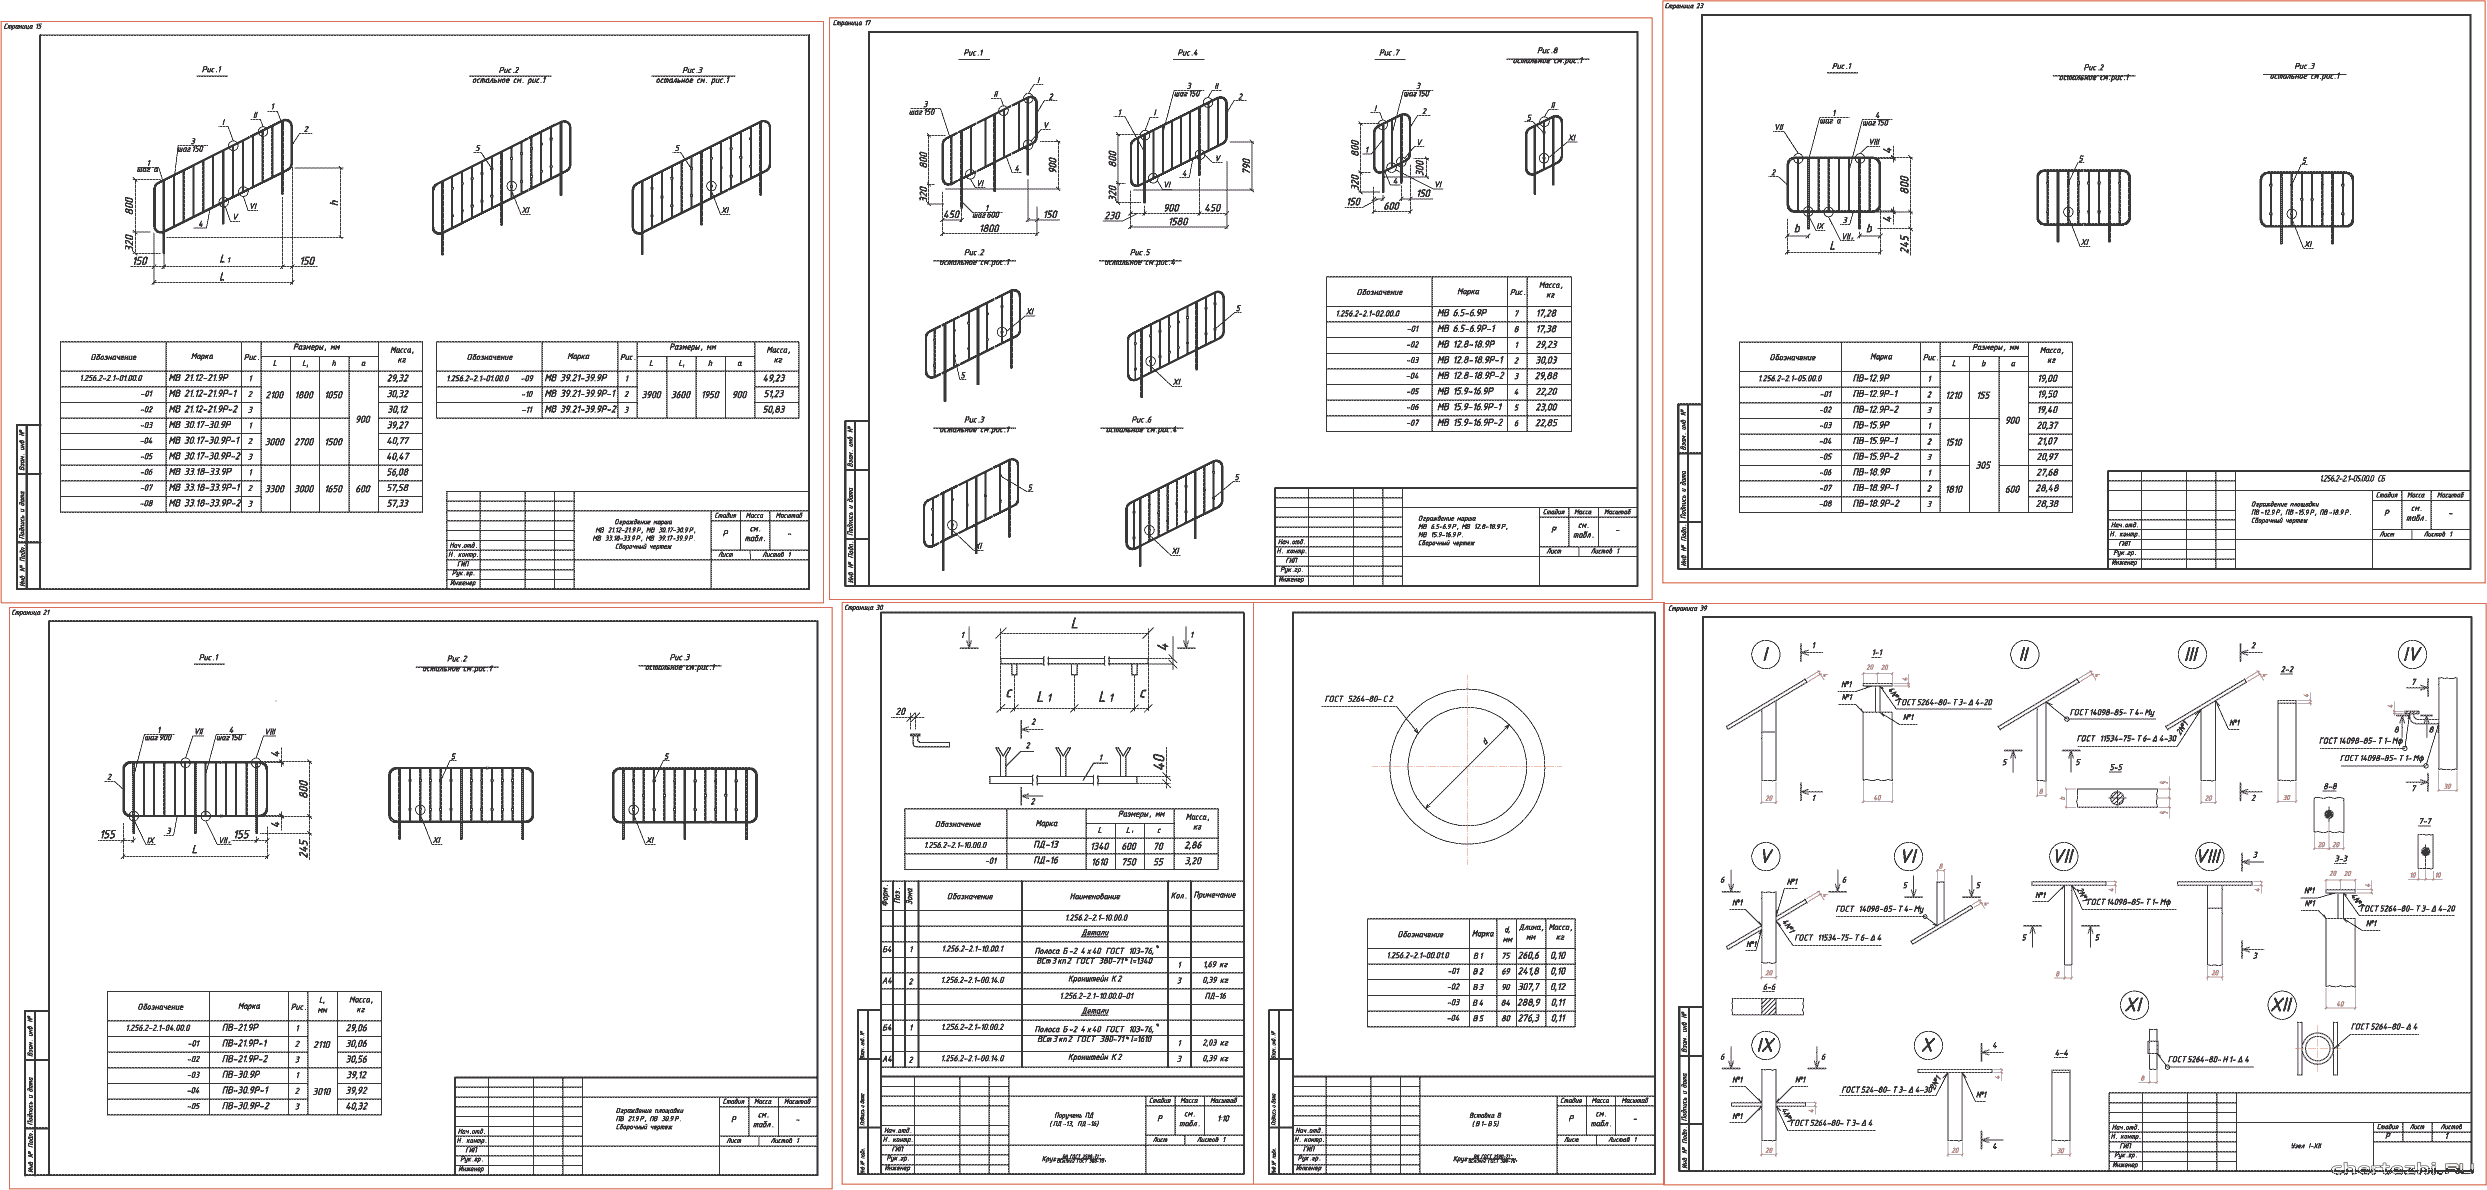 Металлические ограждения лестниц общественных зданий со стенами из кирпича с высотами этажей 2,8; 3,3; 3,6 и 4,2 м